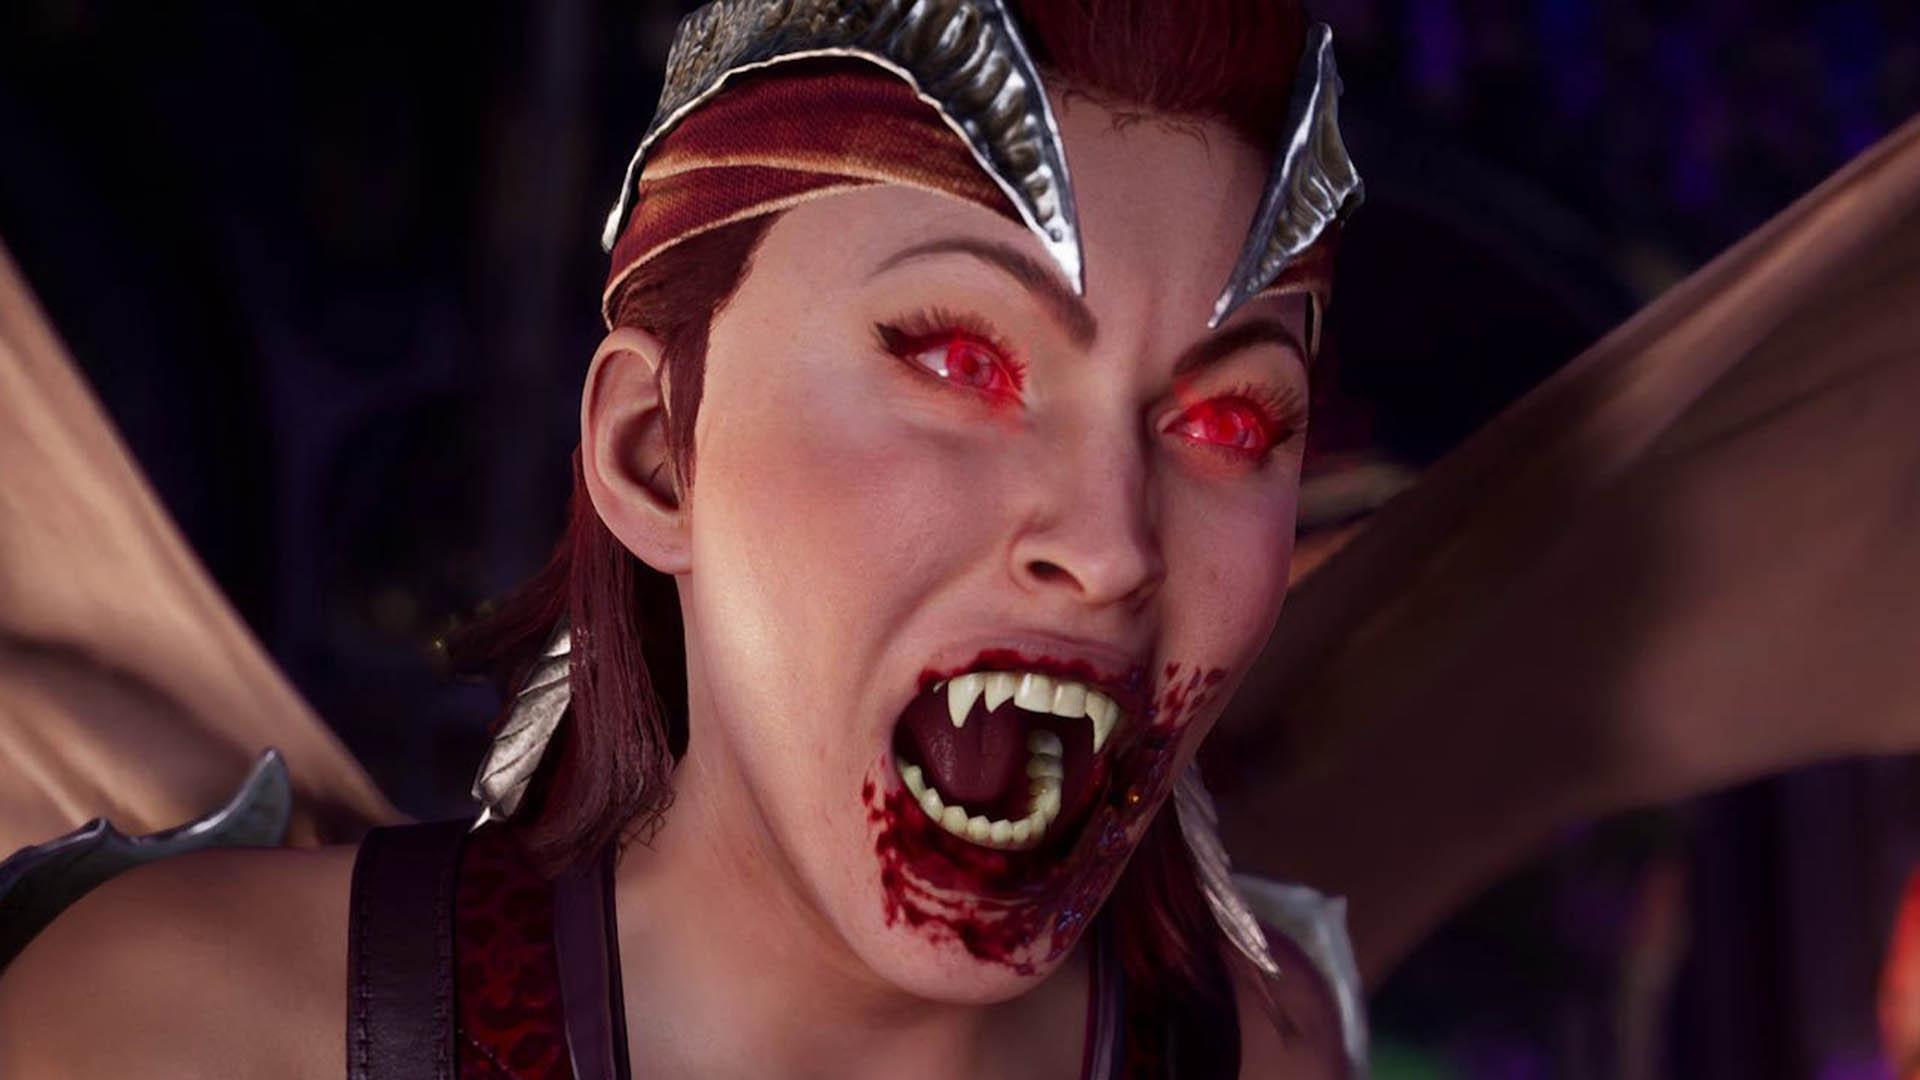 شخصیت نیتارا درحال فریاد زدن در مجموعه Mortal kombat